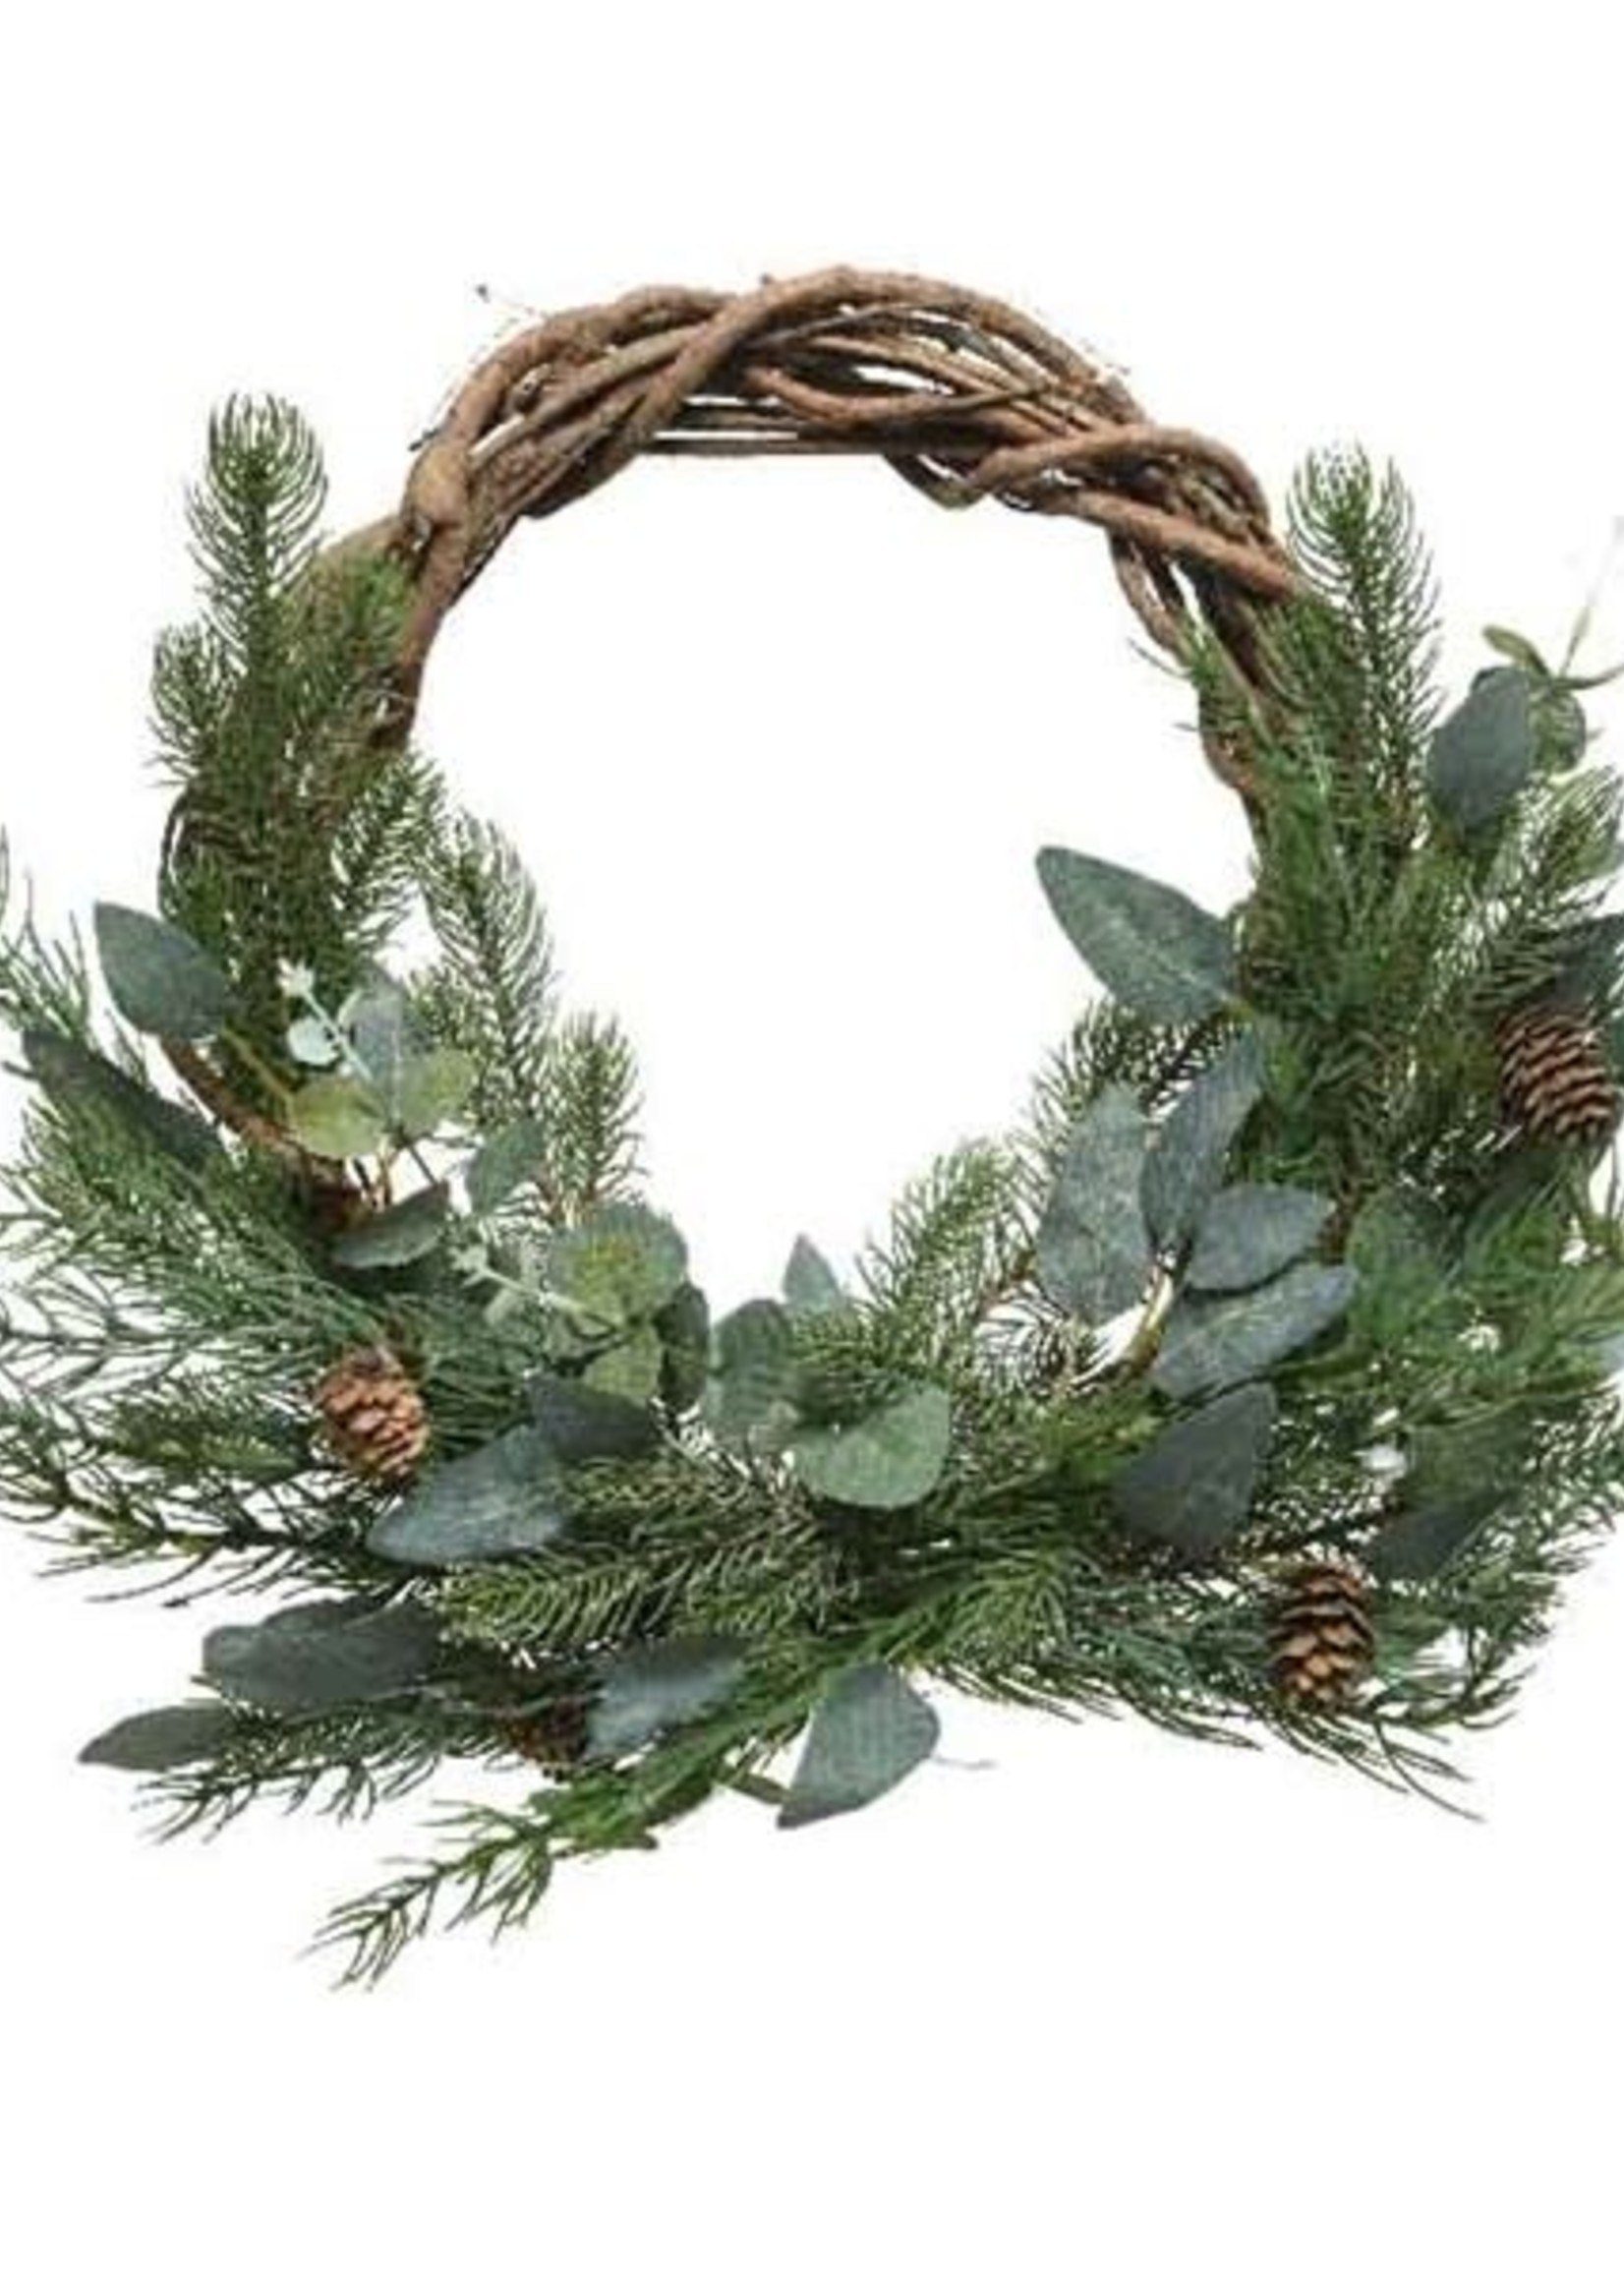 Decoris Wreath With Eucalyptus and Pinecones